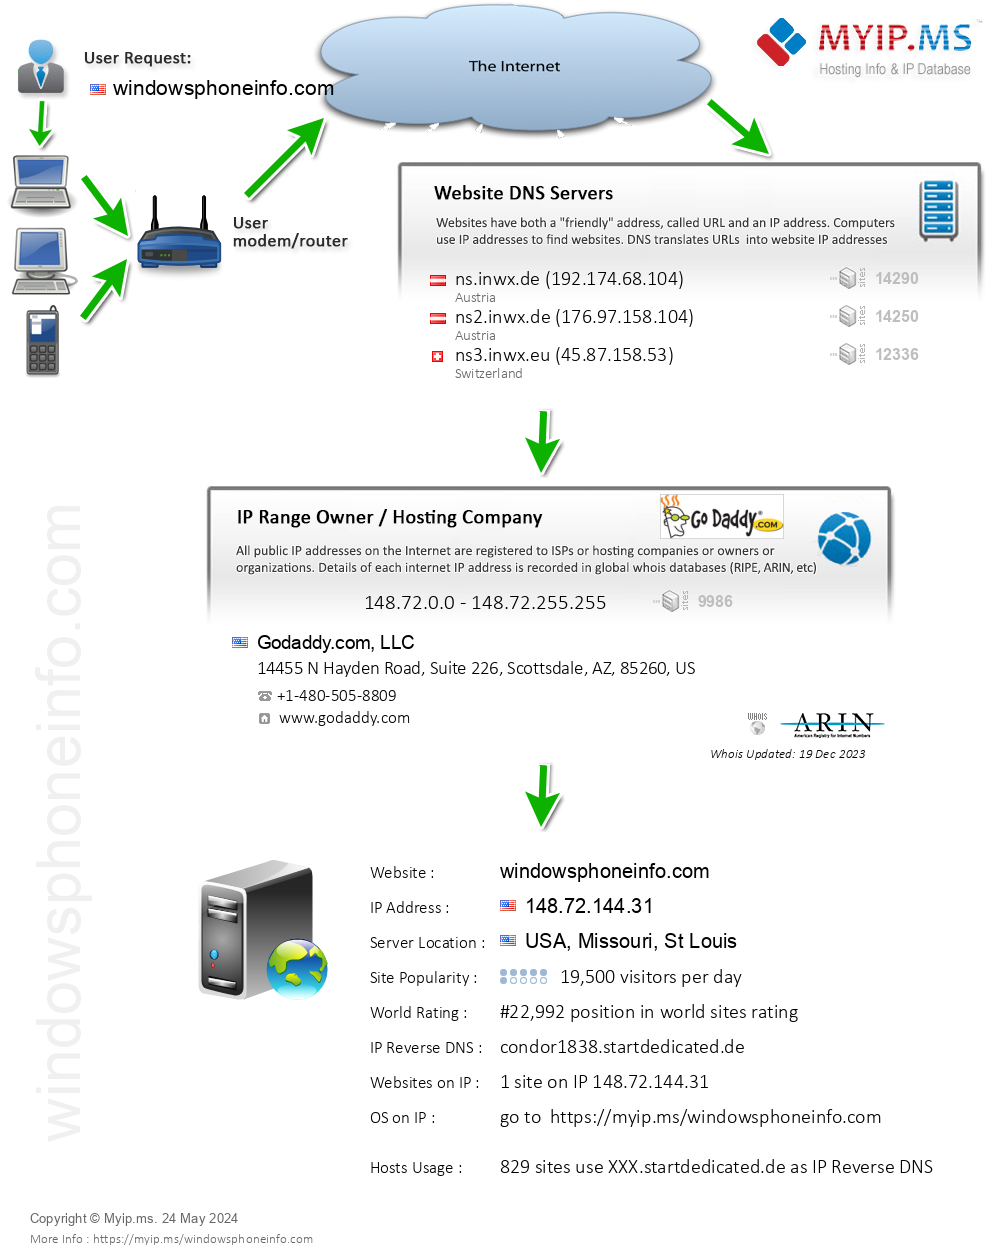 Windowsphoneinfo.com - Website Hosting Visual IP Diagram